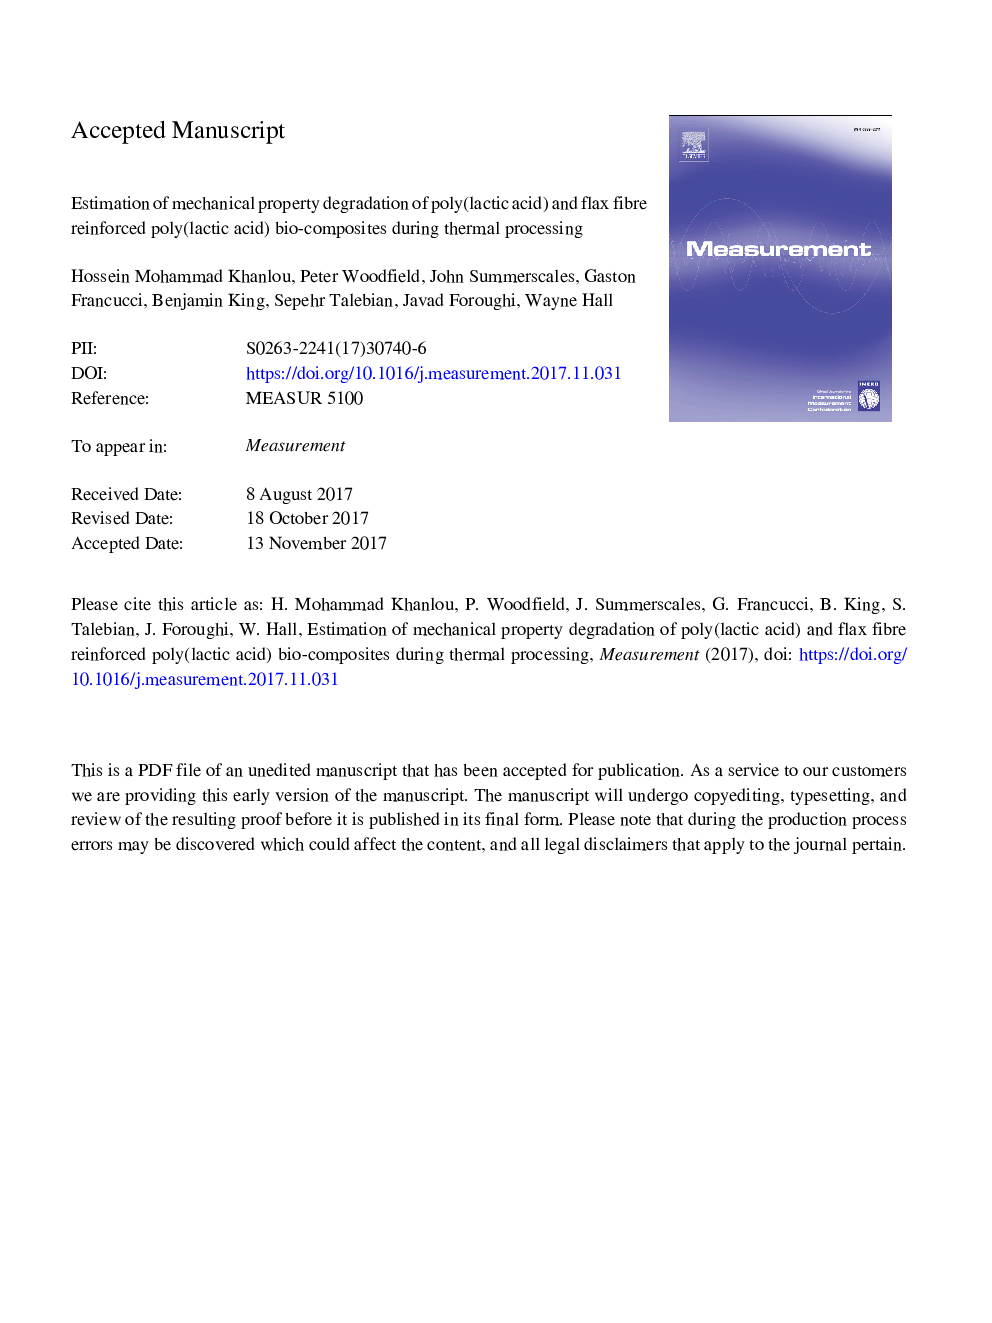 برآورد تخریب اموال مکانیکی زیست کامپوزیت پلی (اسید لاکتیک) تقویت شده پلی (اسید لاکتیک) و فیبر کتان در طول پردازش حرارتی 